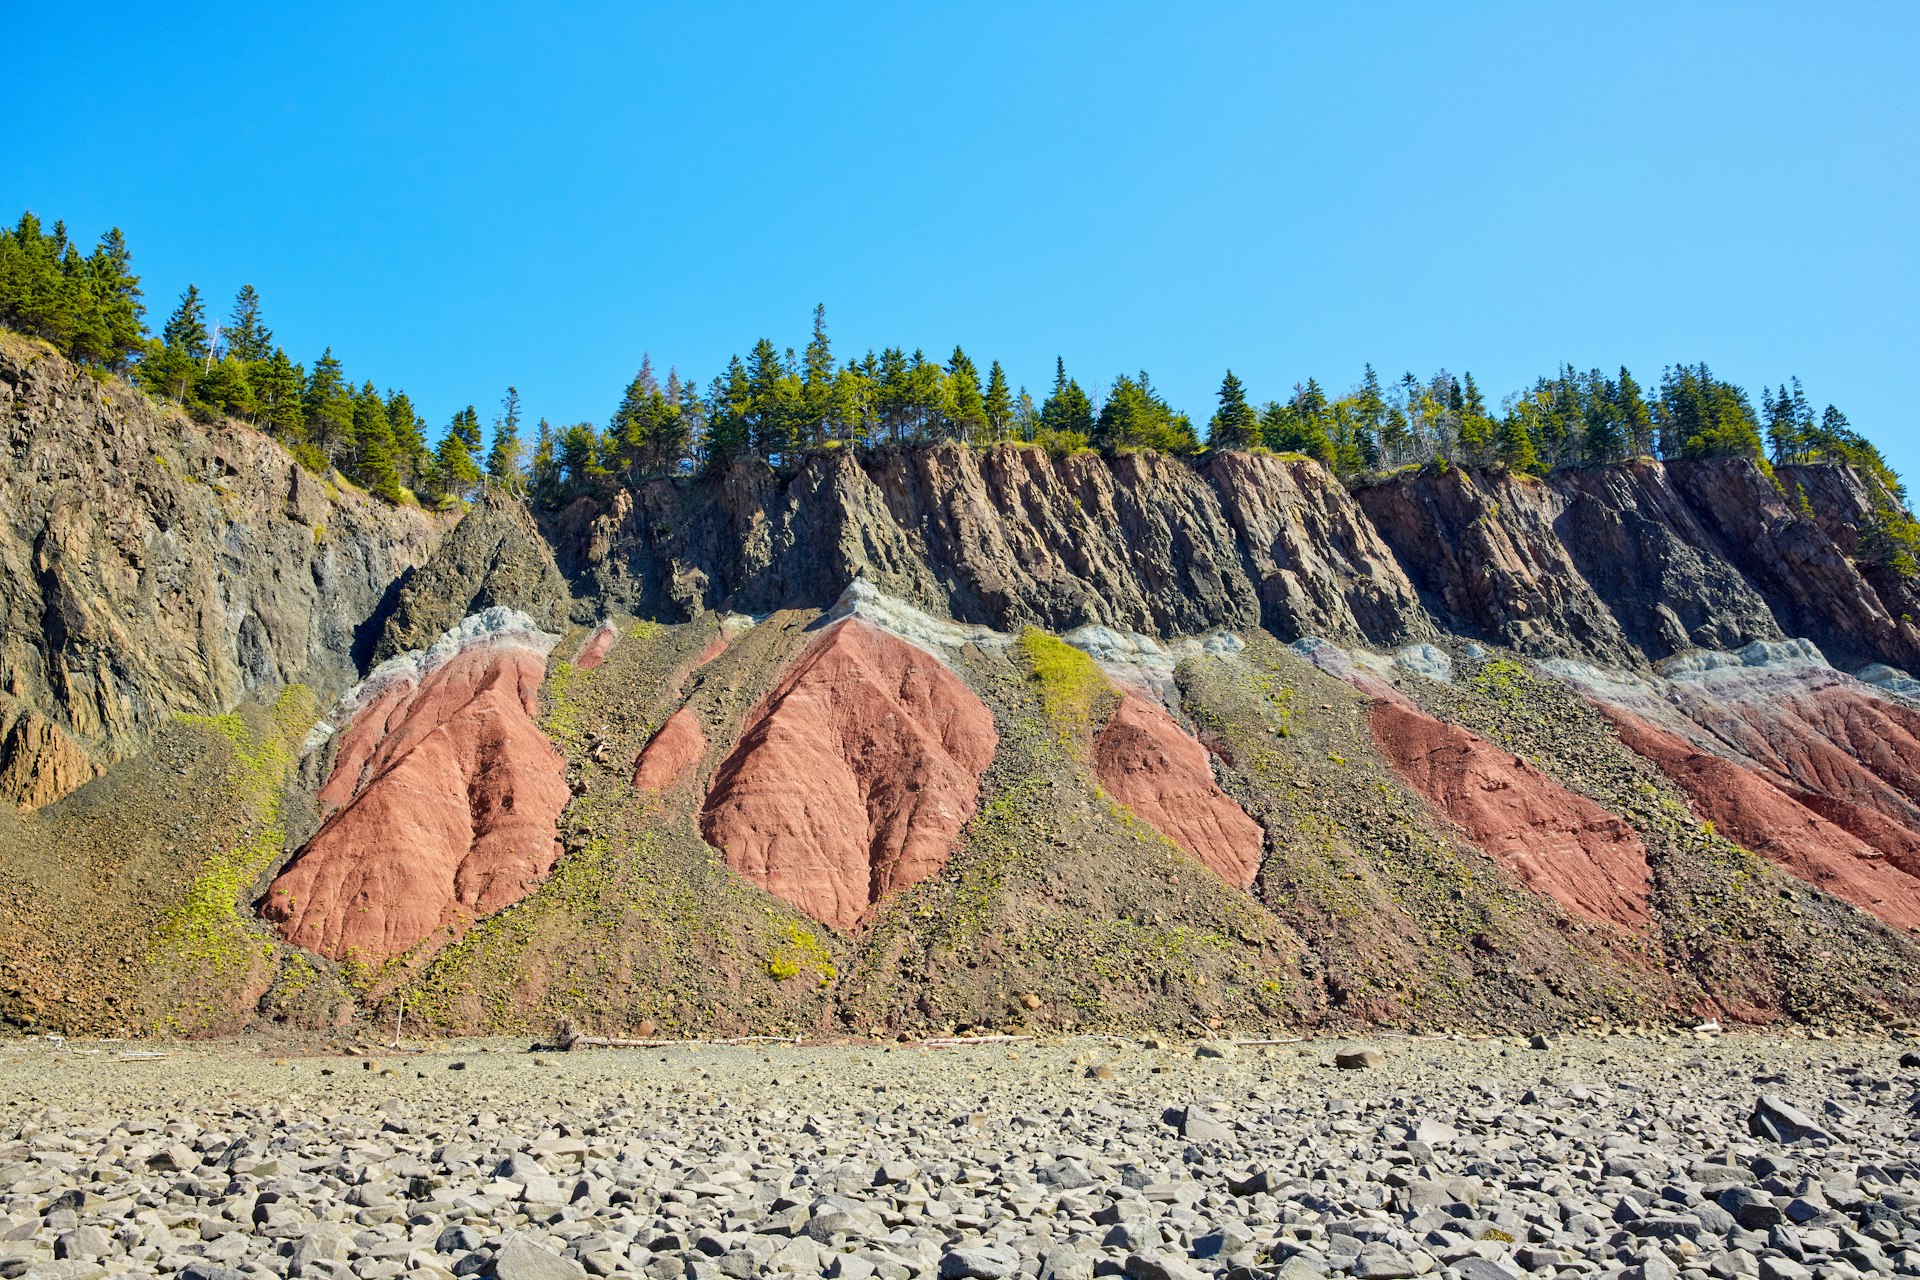 Cliffs at Five Islands Provincial Park, Bay of Fundy, Nova Scotia, Canada